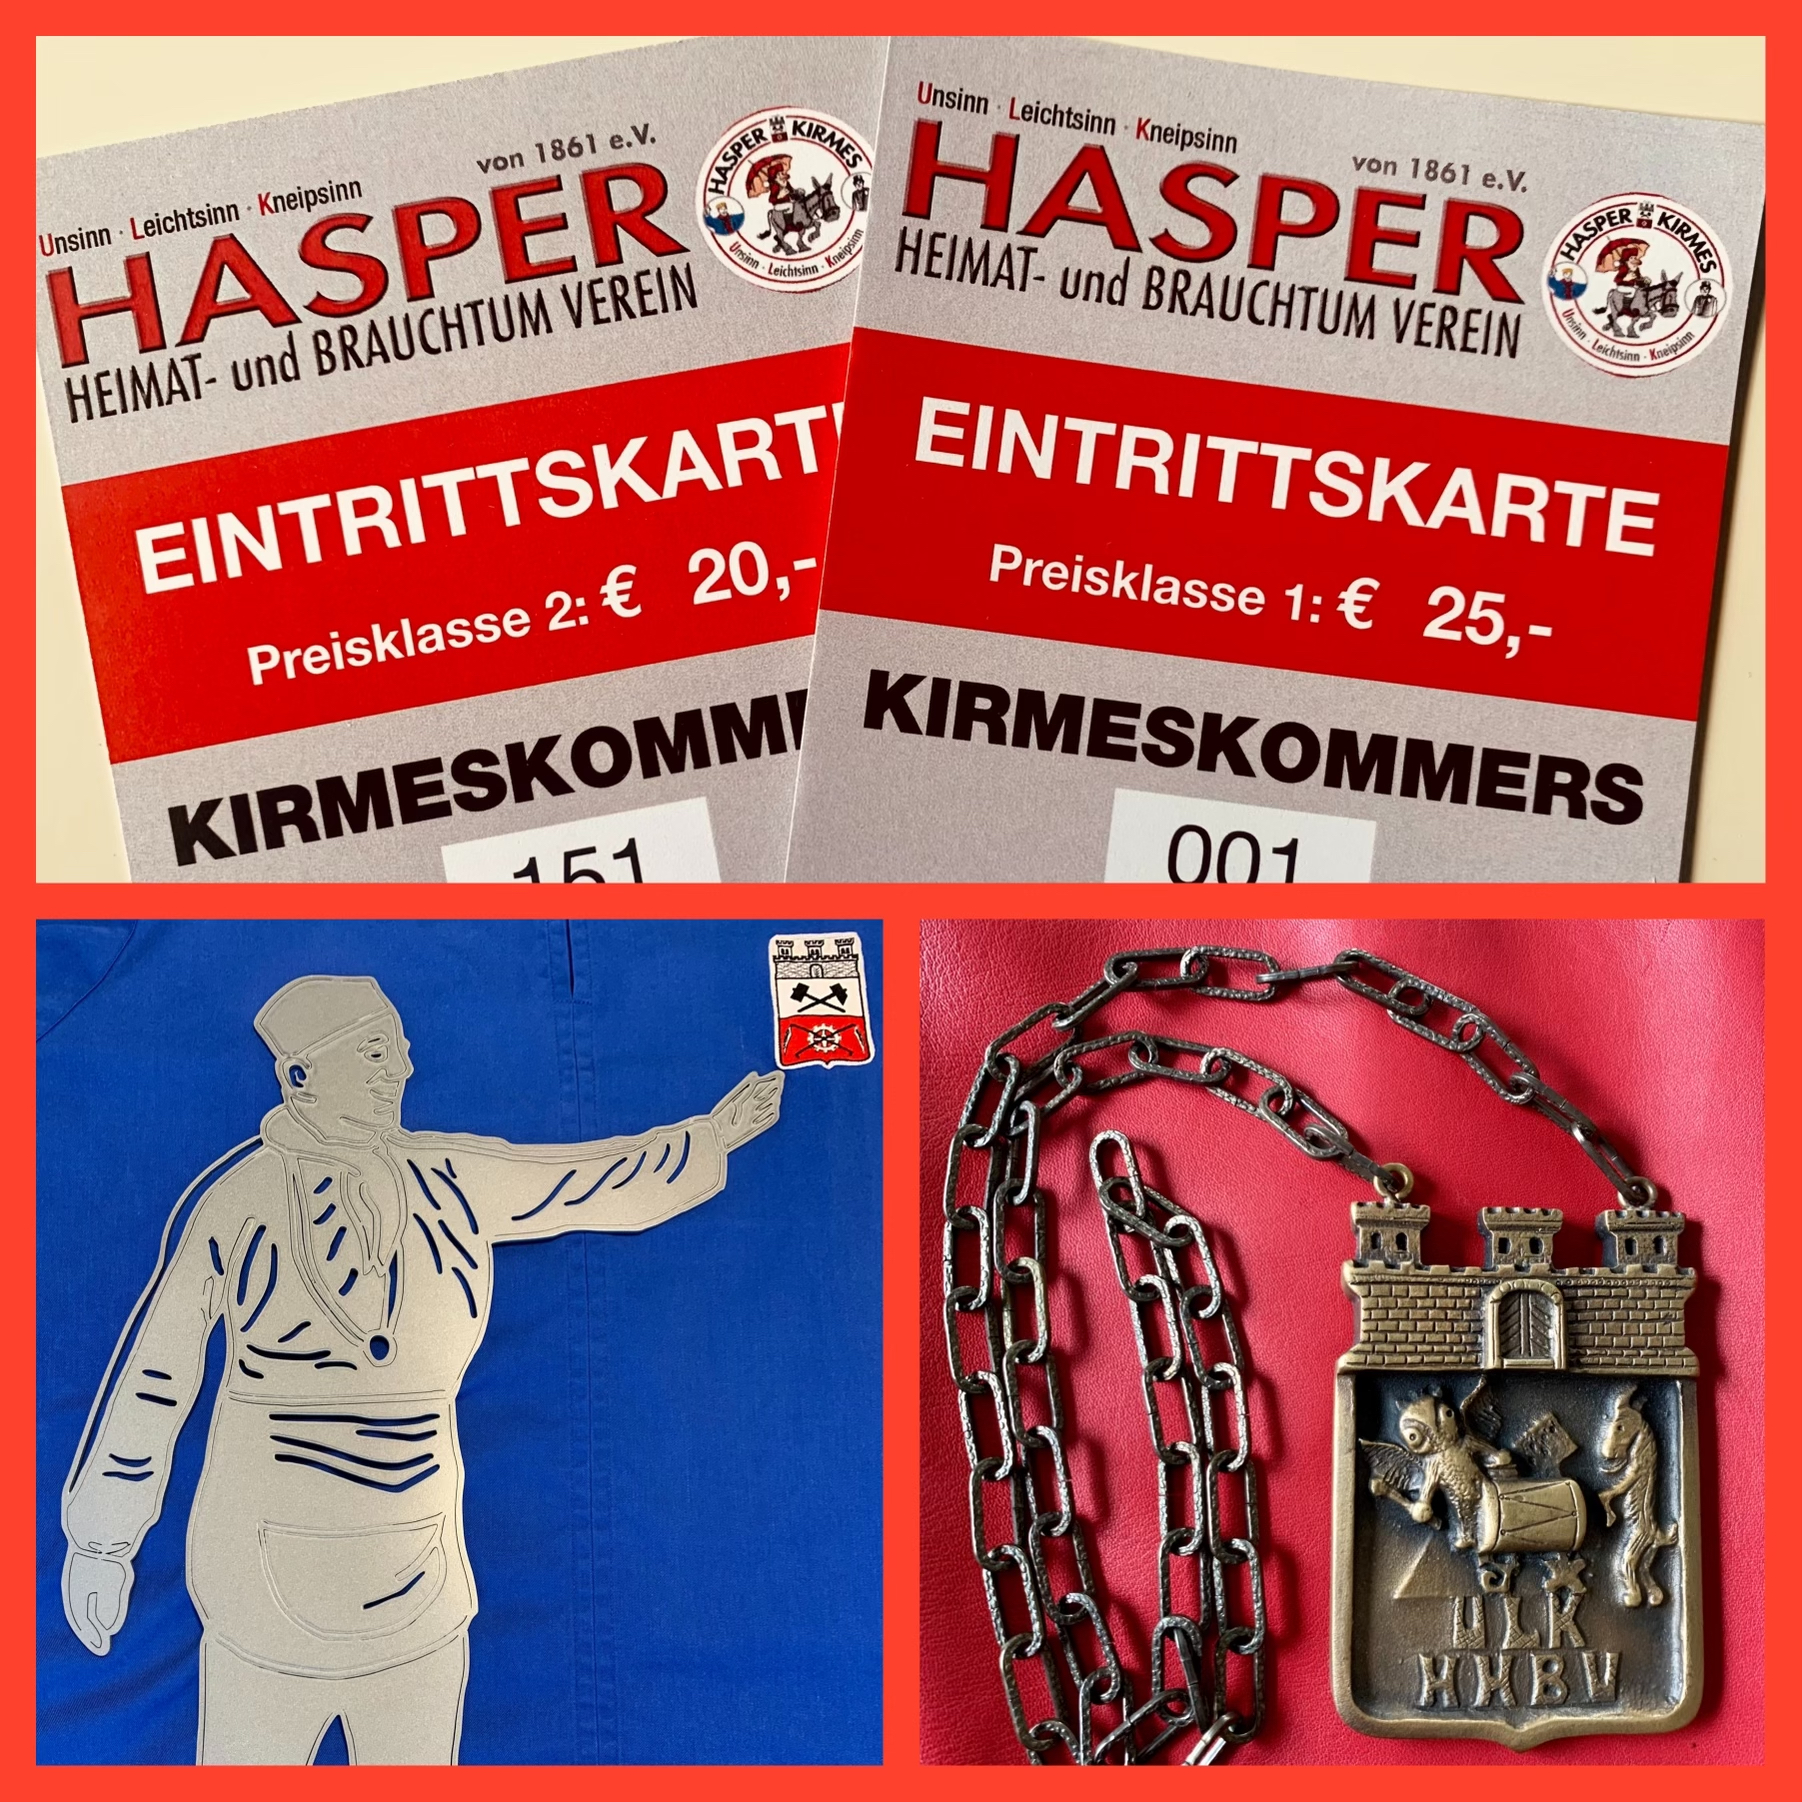 📢Der Hasper Heimat- und Brauchtum-Verein läutet die Kirmeszeit 2023 🎡ein und lädt herzlich zum diesjährigen Kirmeskommers ein!